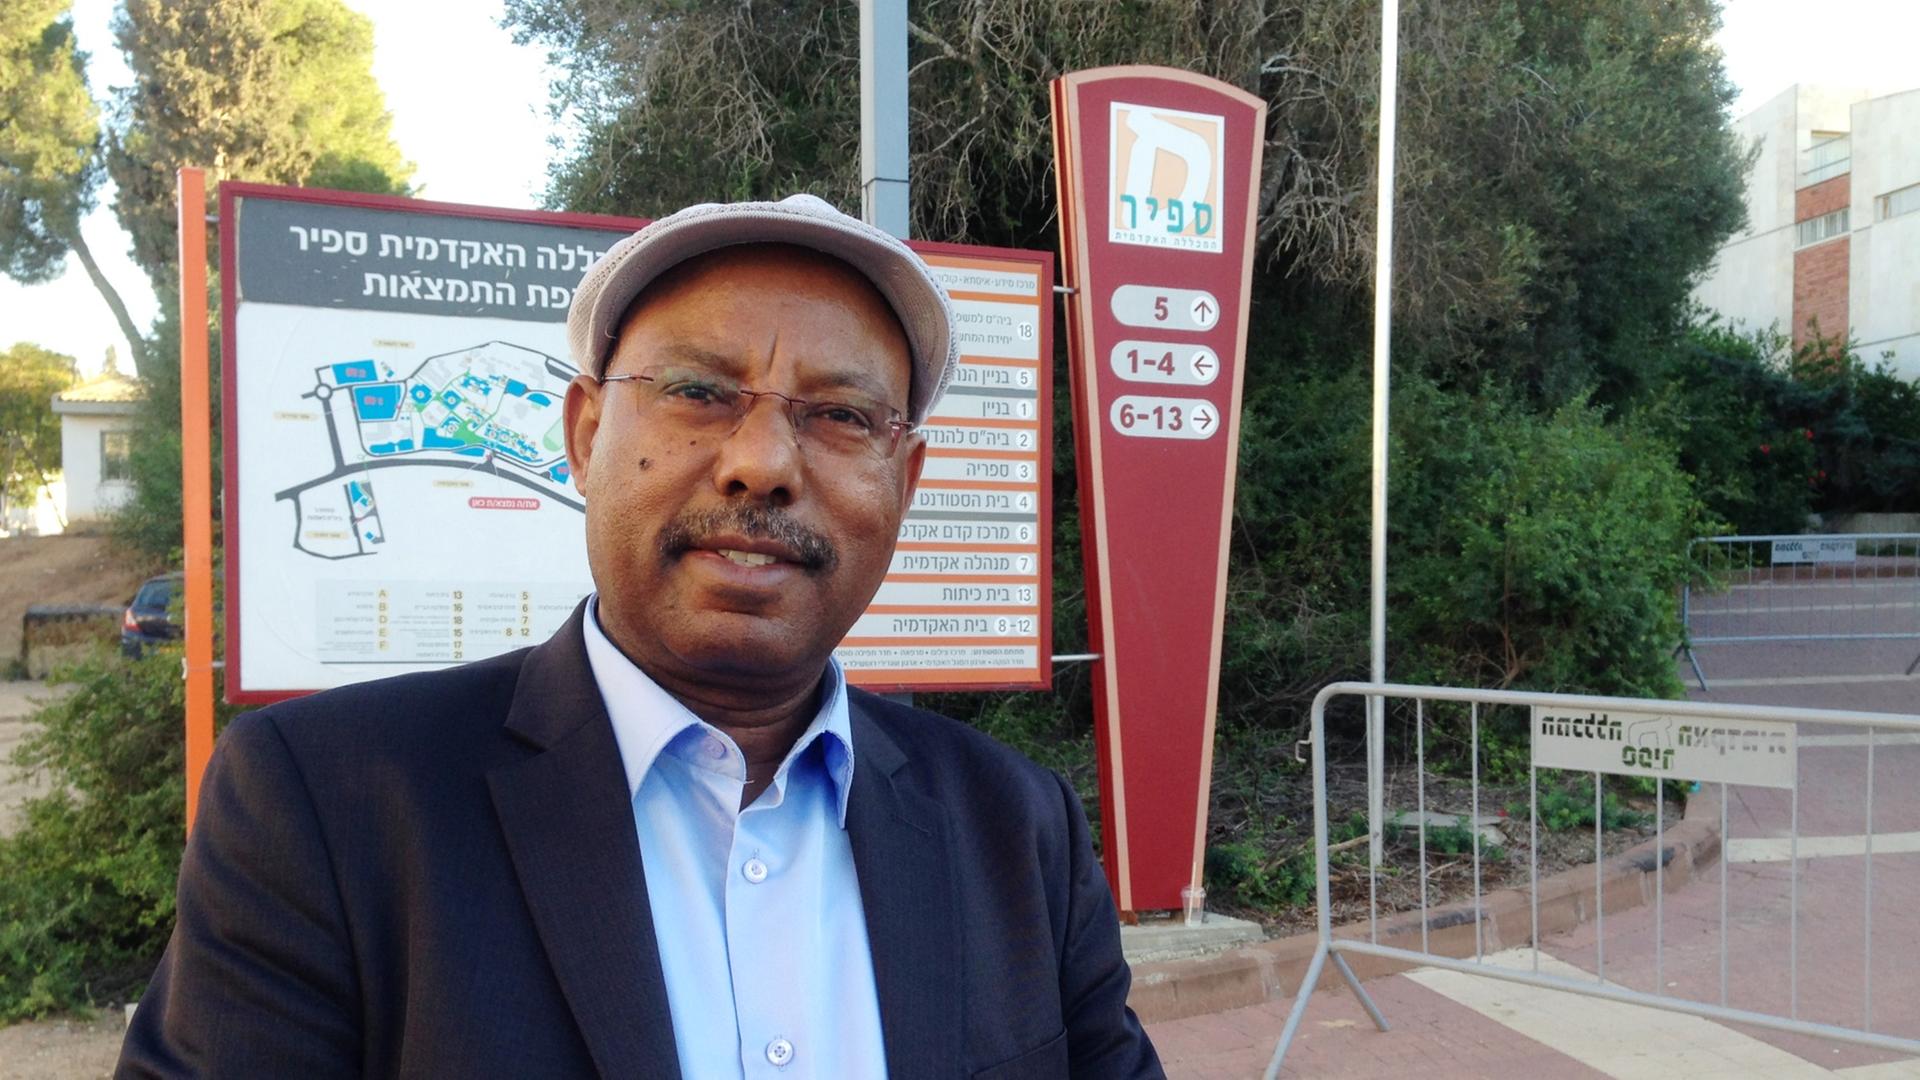 Der äthiopische Knesset-Abgeordnete Avraham Neguse